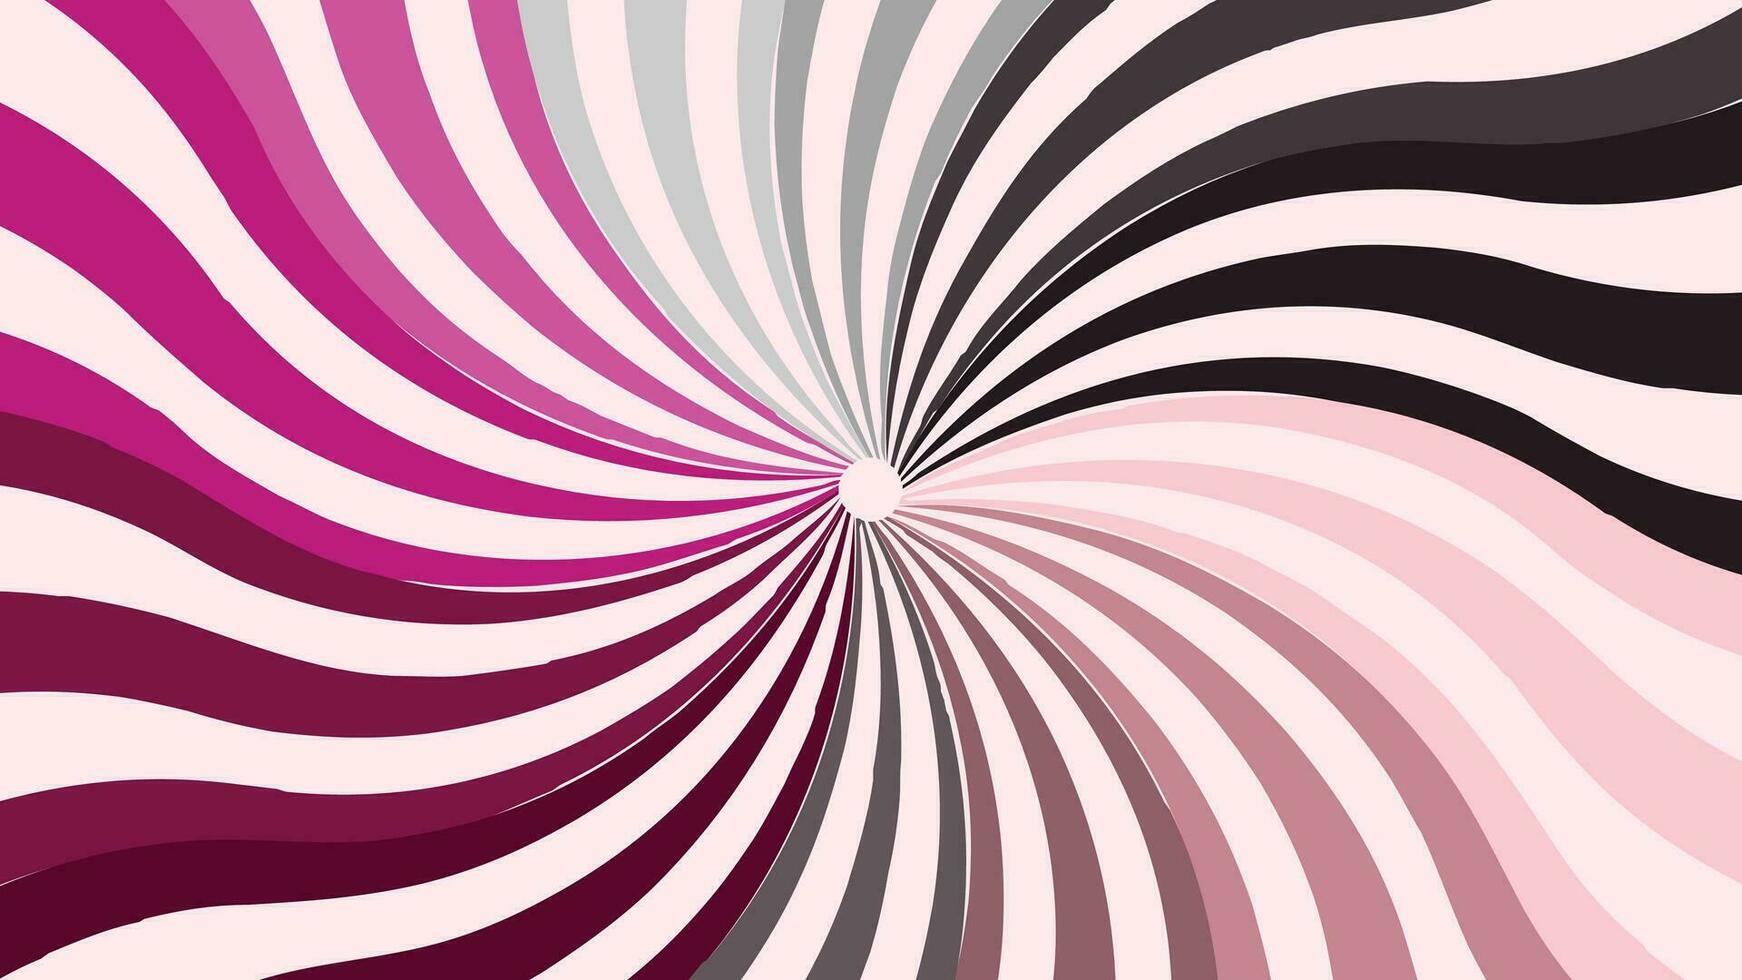 abstarct spirale contorto tratteggiata il giro vortice stile viola colore sfondo vettore